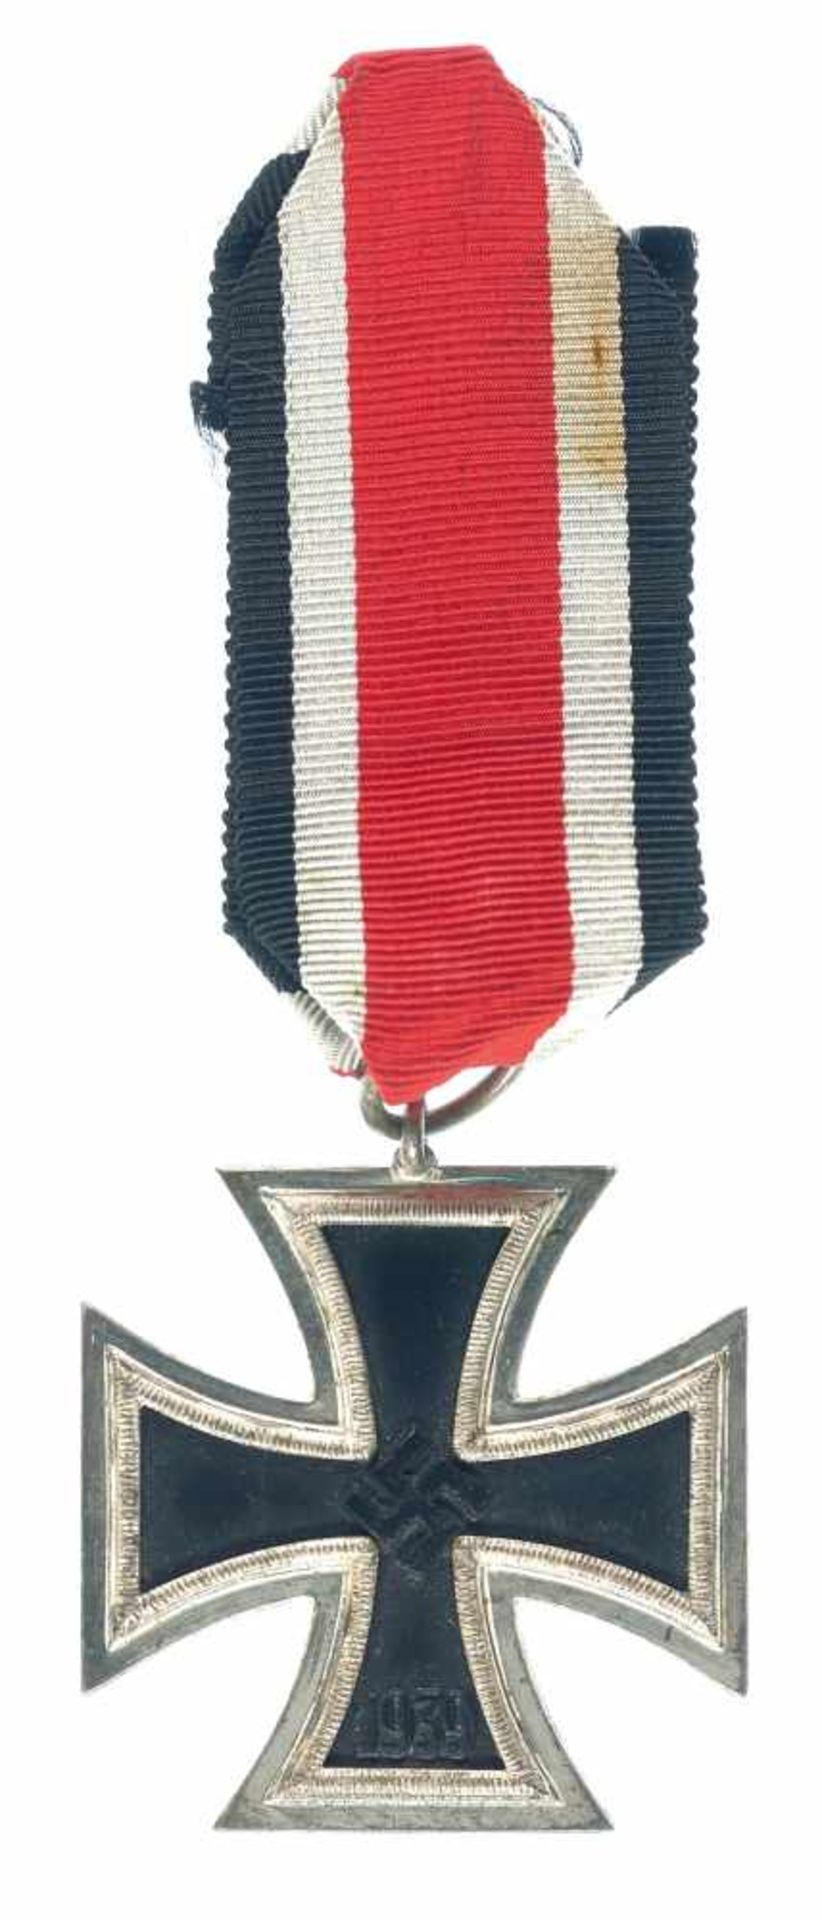 Allg. militärische Auszeichnungen 2. Weltkrieg Eisernes Kreuz 1939 2. Klasse, am Band, Zustand 2.,